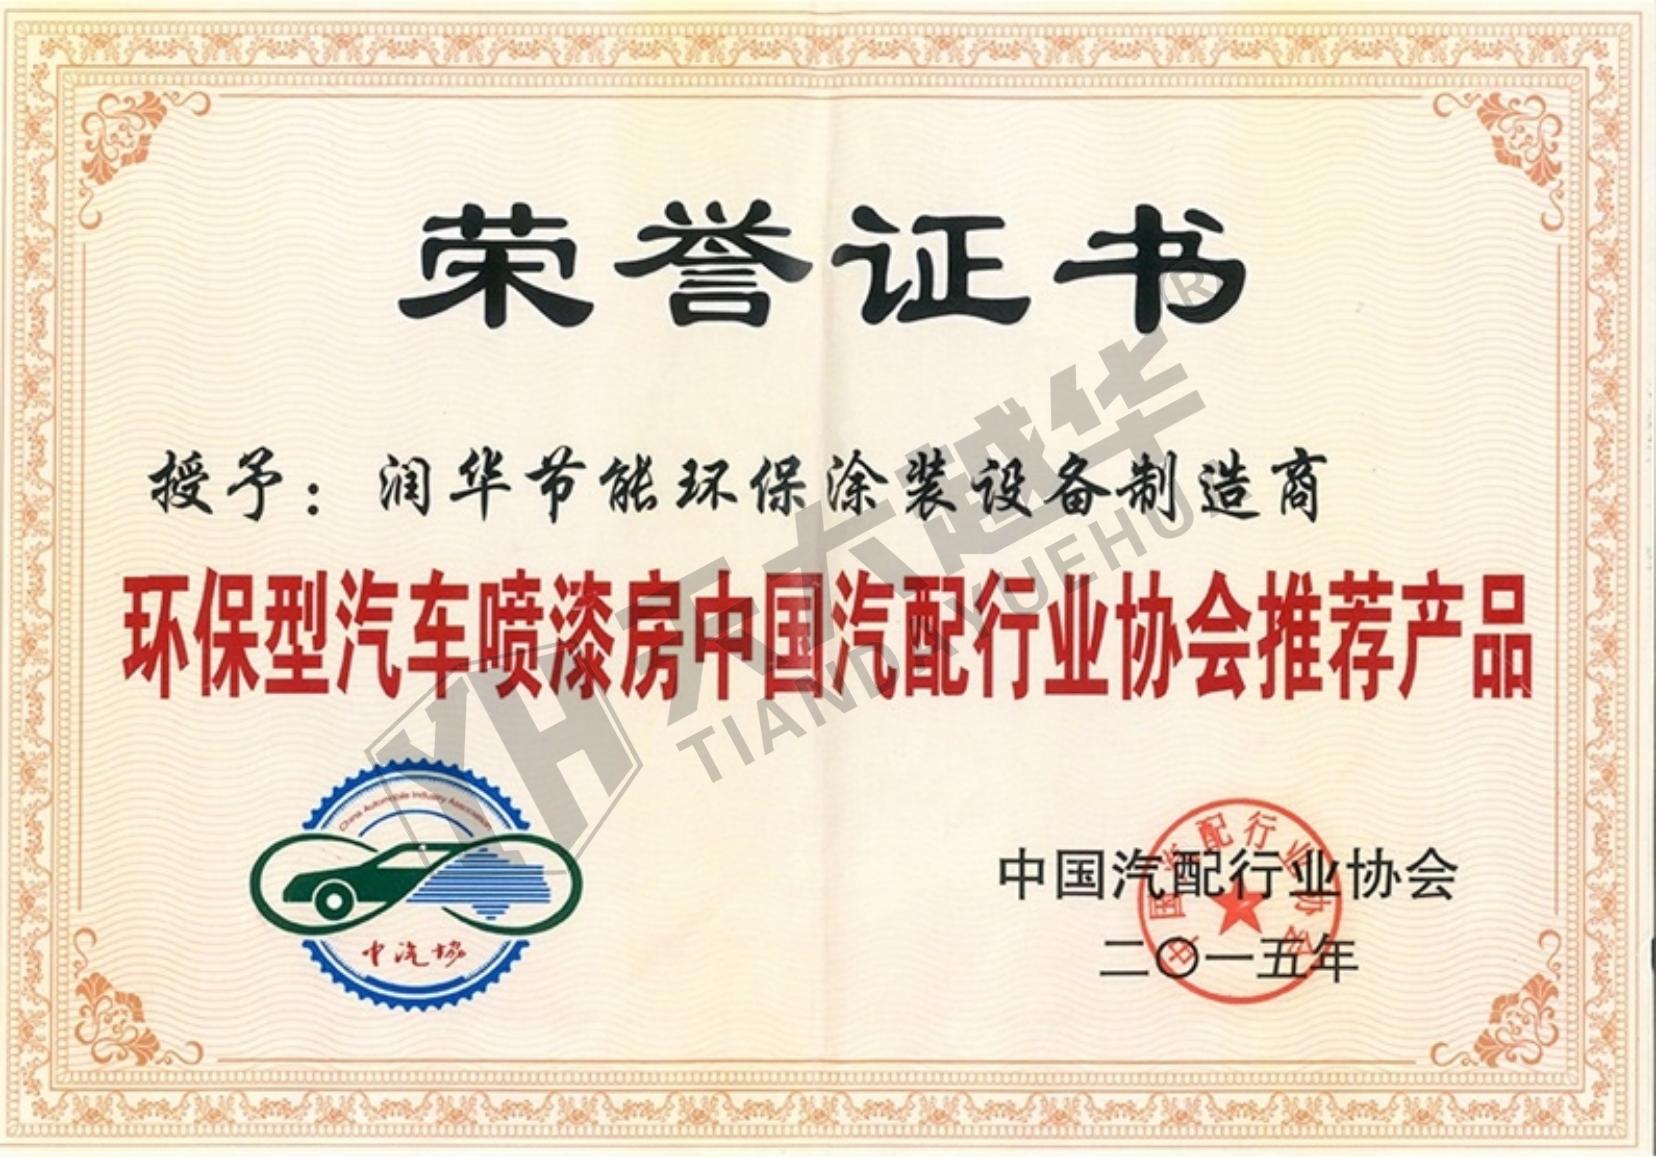 汽配行业协会产品荣誉证书--长春润华